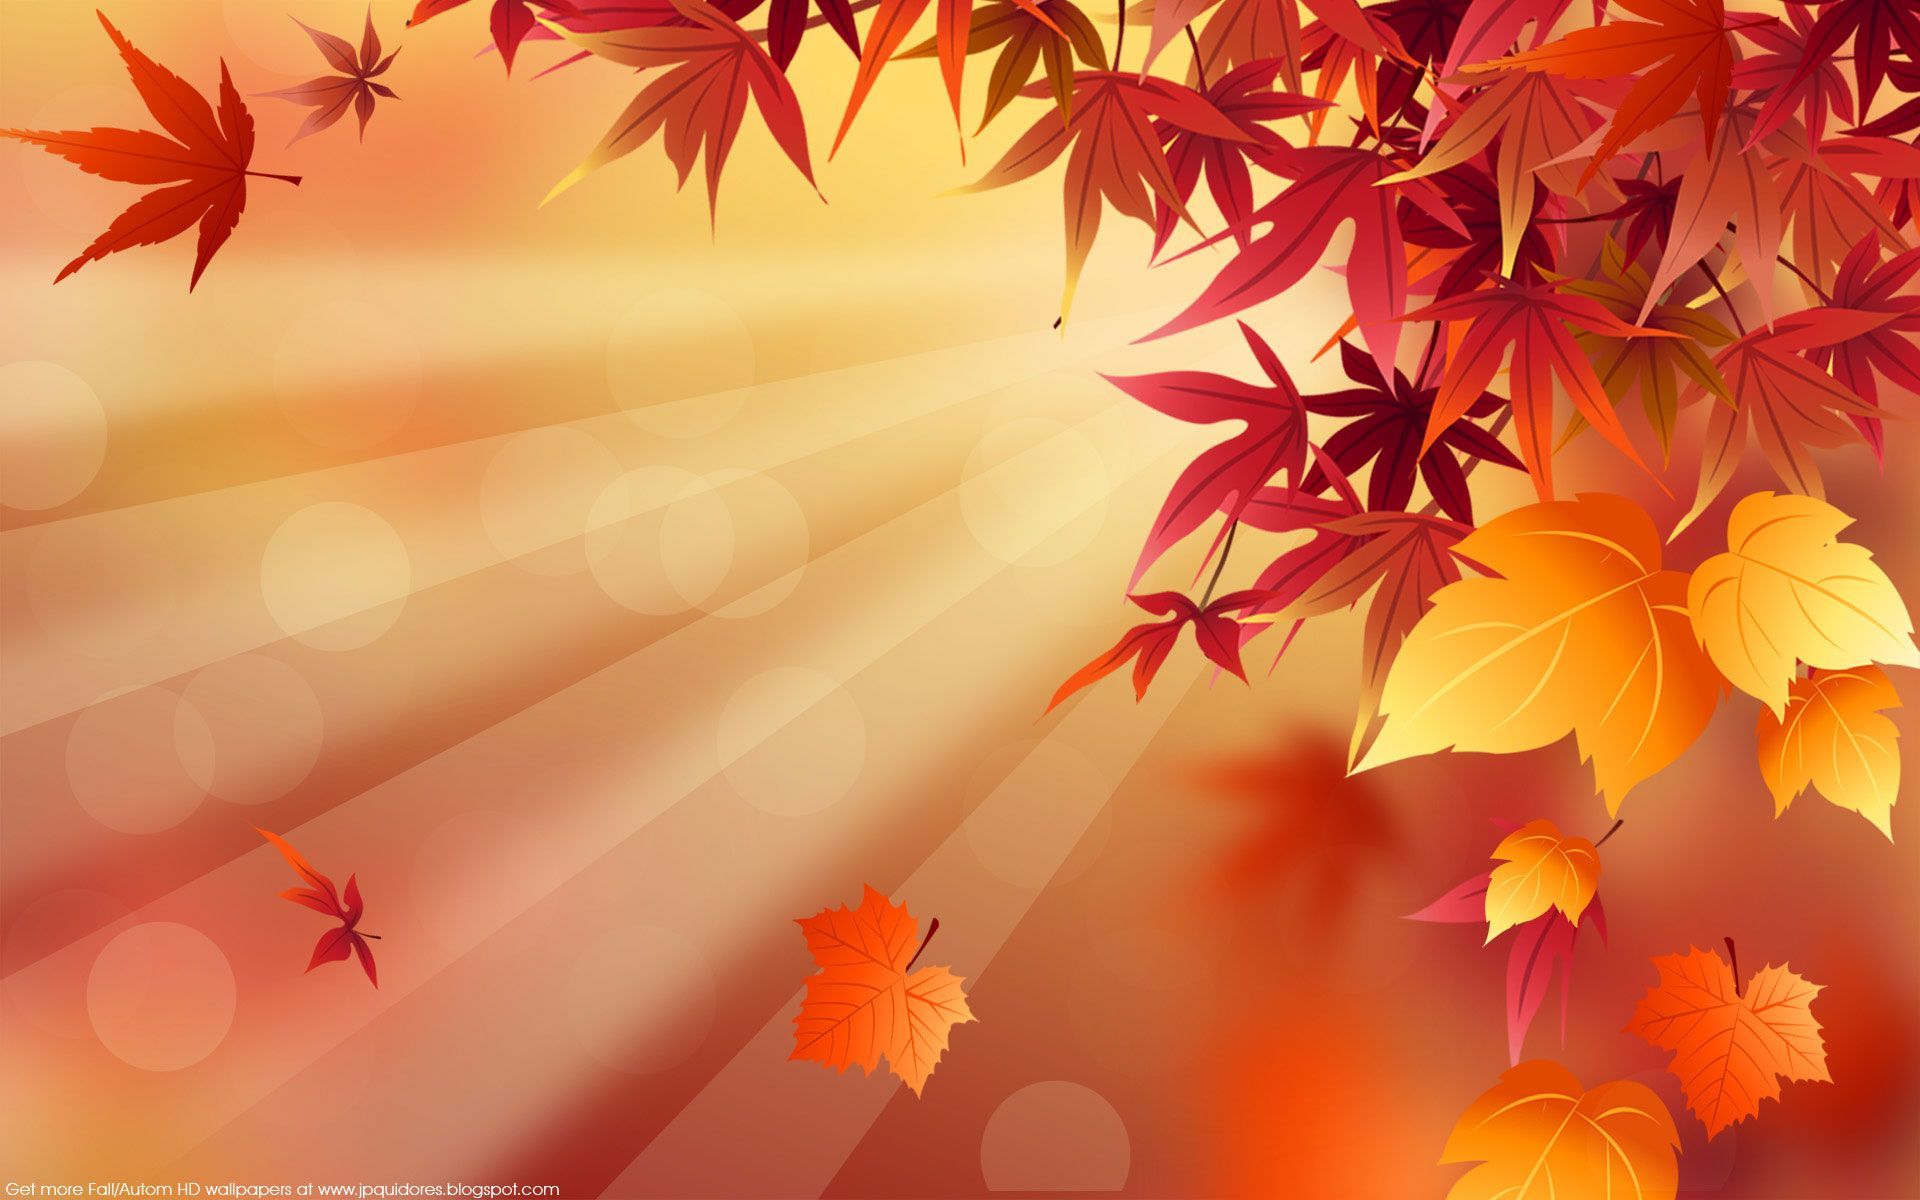 상의 Autumn Desktop Wallpaper에 관한 , 개 이상의 1024×640 Fall Themed Desktop Background (38 Wallpaper). Ado. Fall wallpaper, Background desktop, Autumn theme